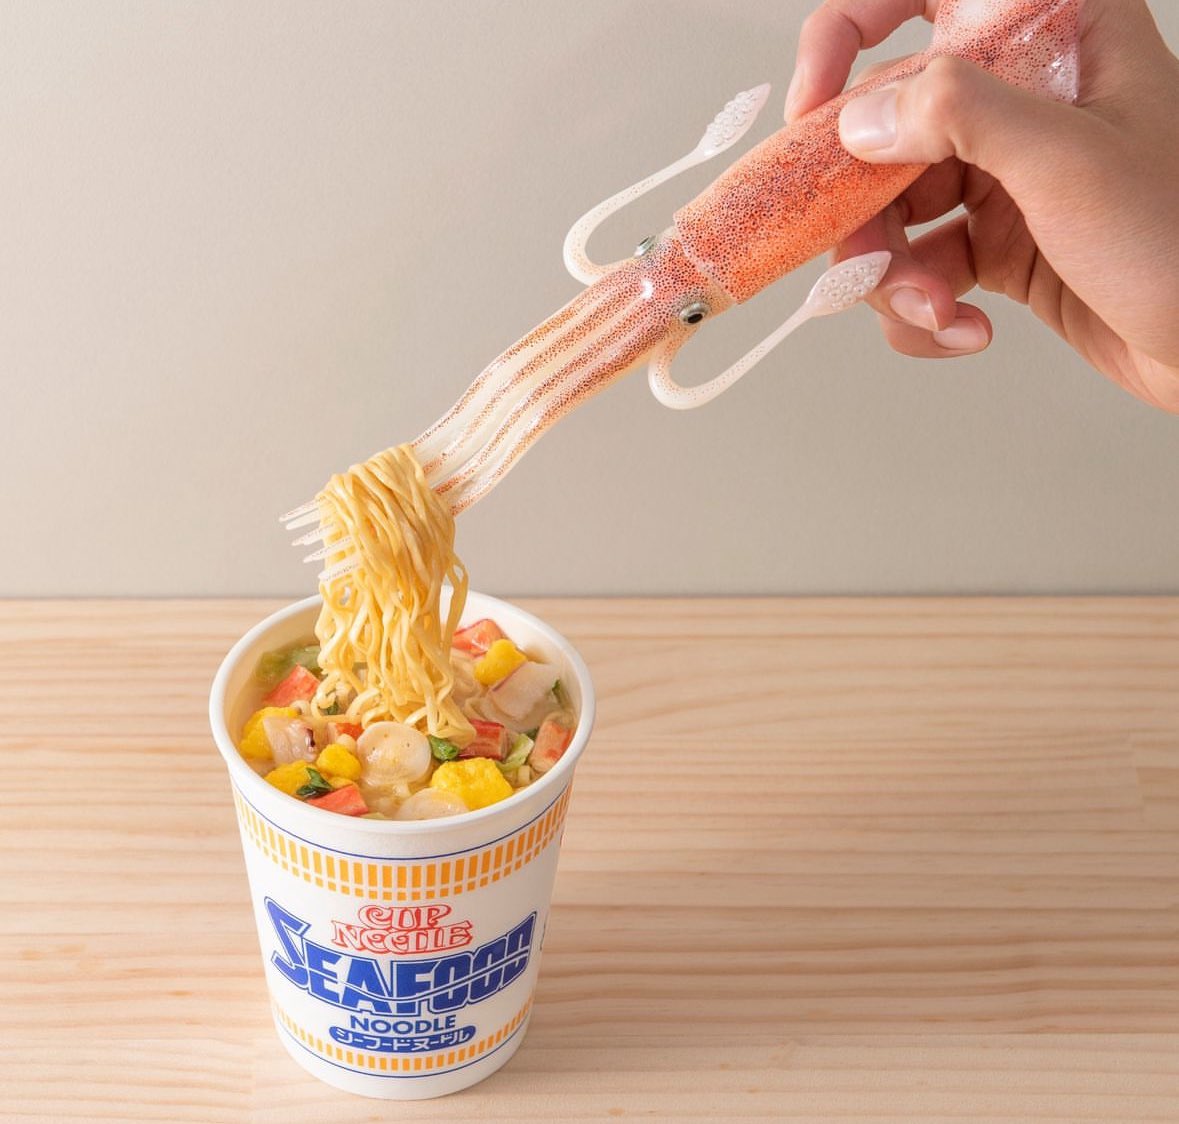 일본 라면업체 NISSIN에서 한정으로 나온 
오징어 포크 ㅋㅋㅋㅋ